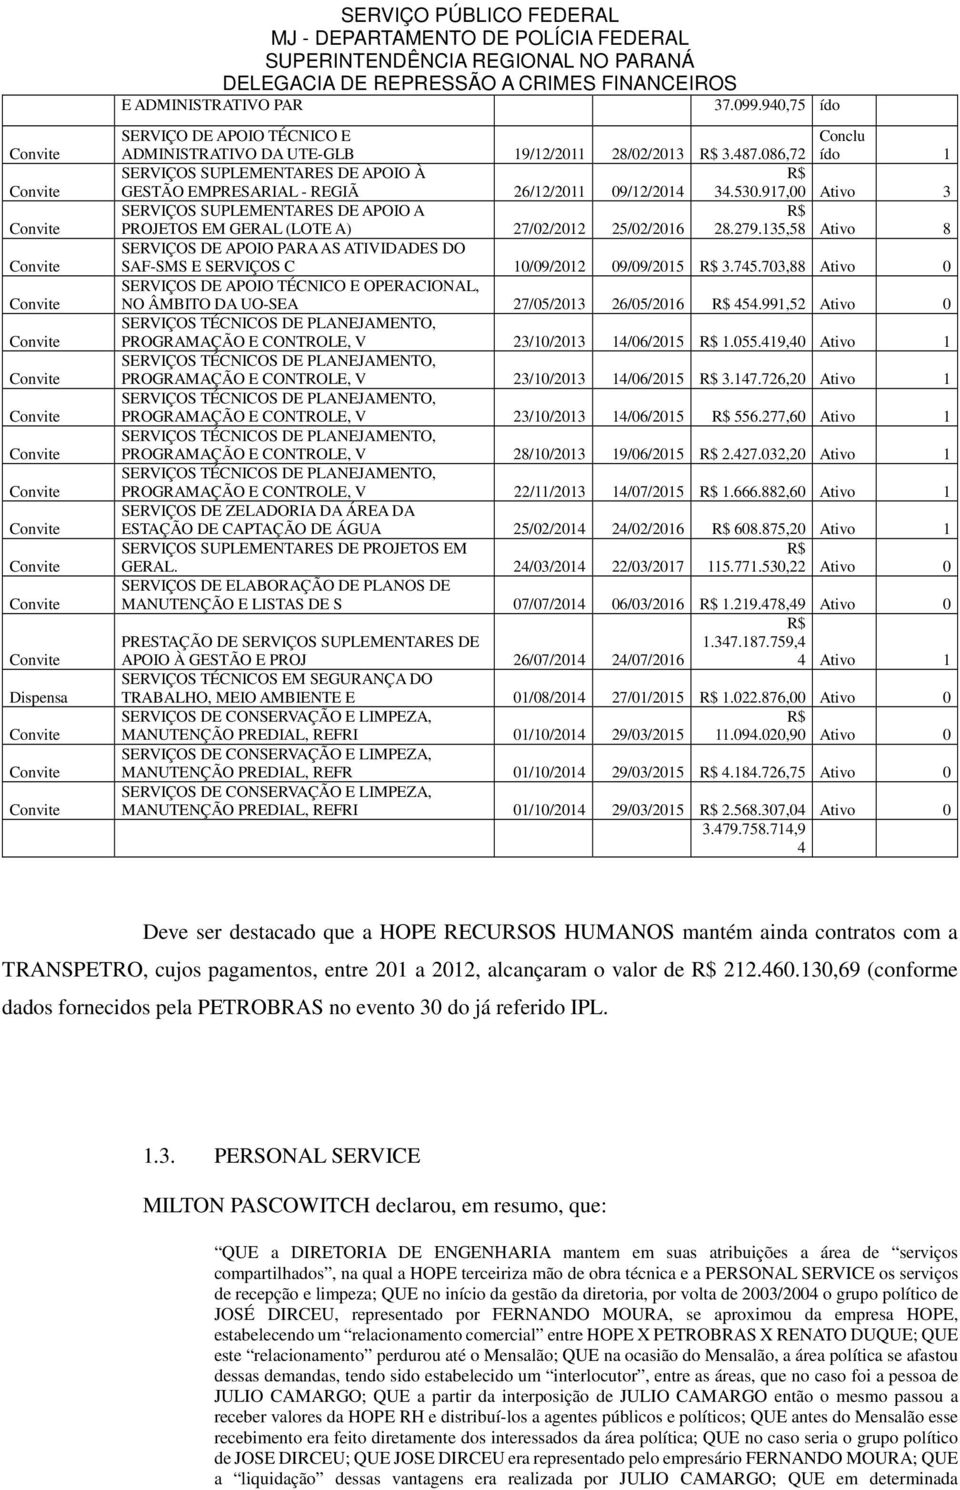 086,72 Conclu ído 1 SERVIÇOS SUPLEMENTARES DE APOIO À R$ GESTÃO EMPRESARIAL - REGIÃ 26/12/2011 09/12/2014 34.530.